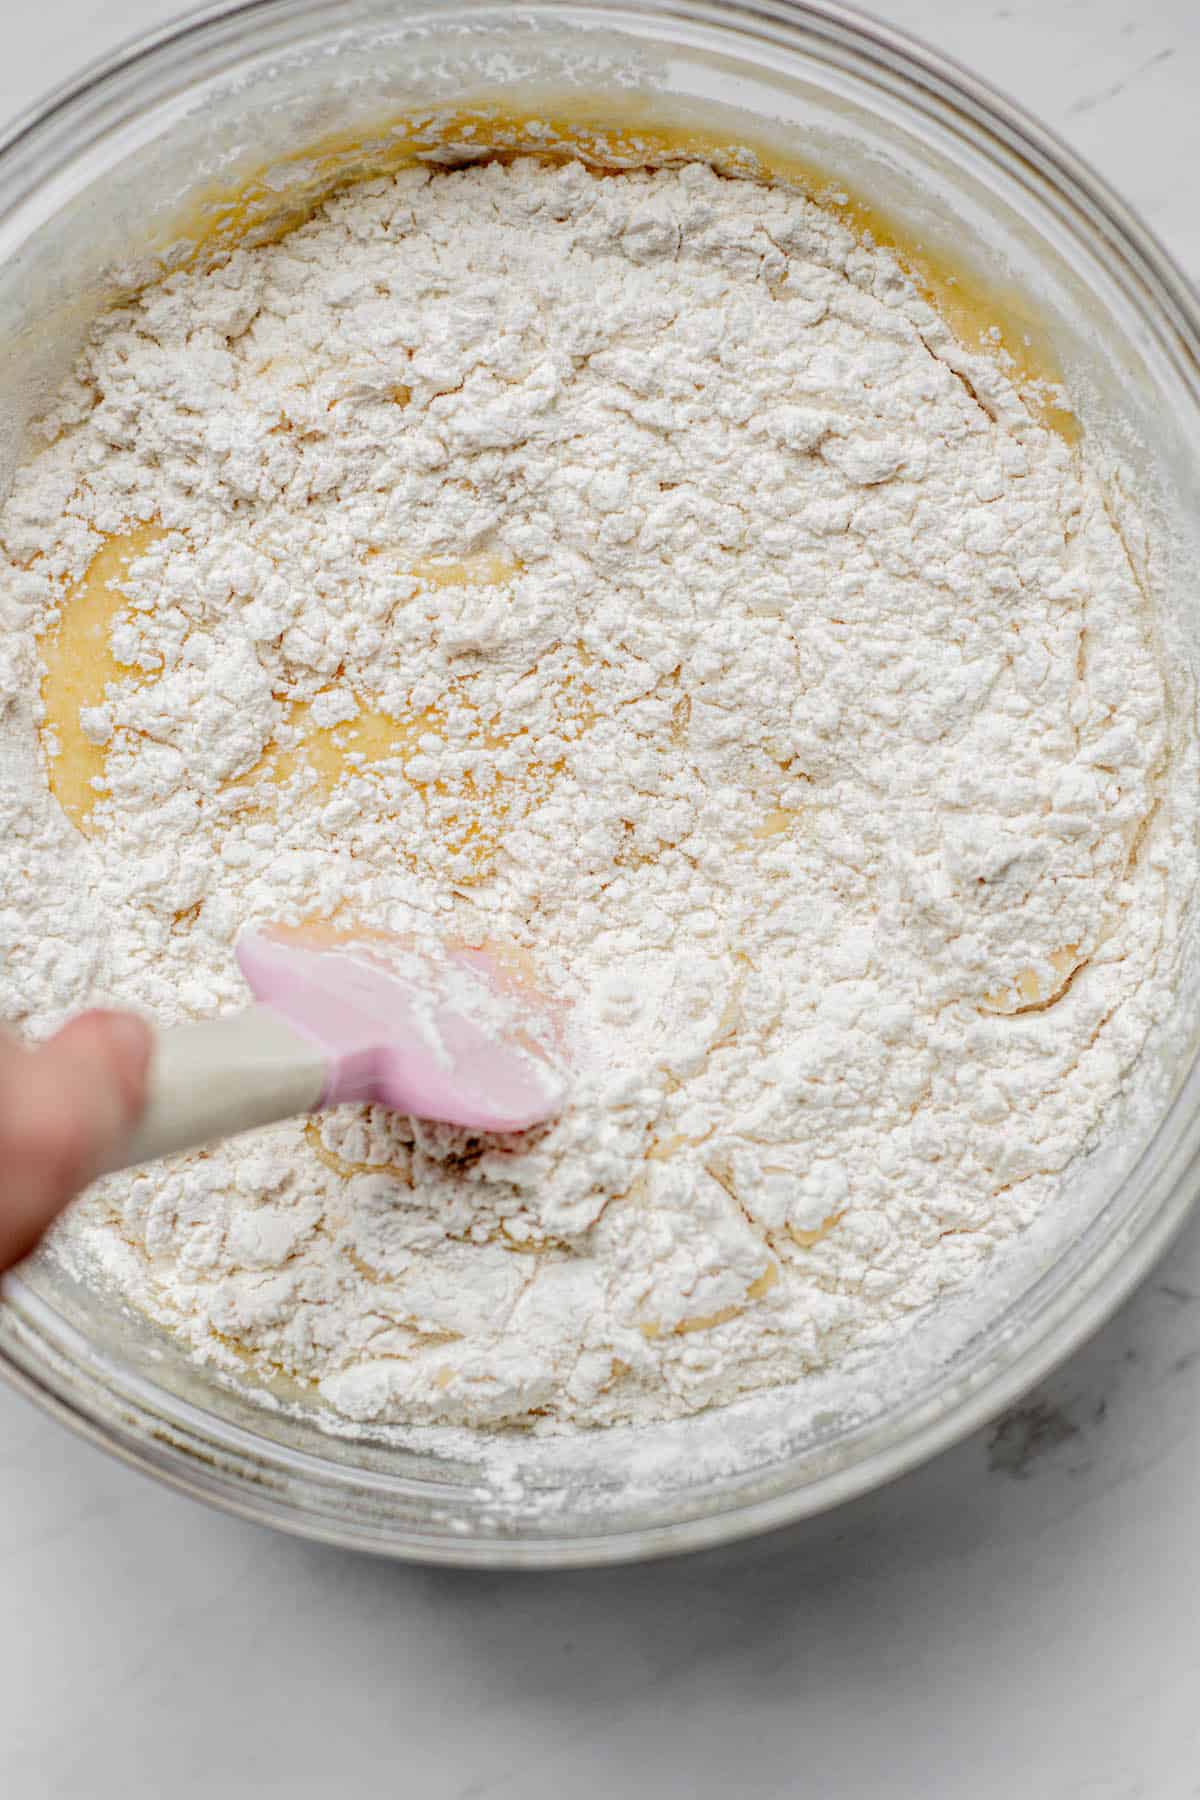 flour in cake batter.